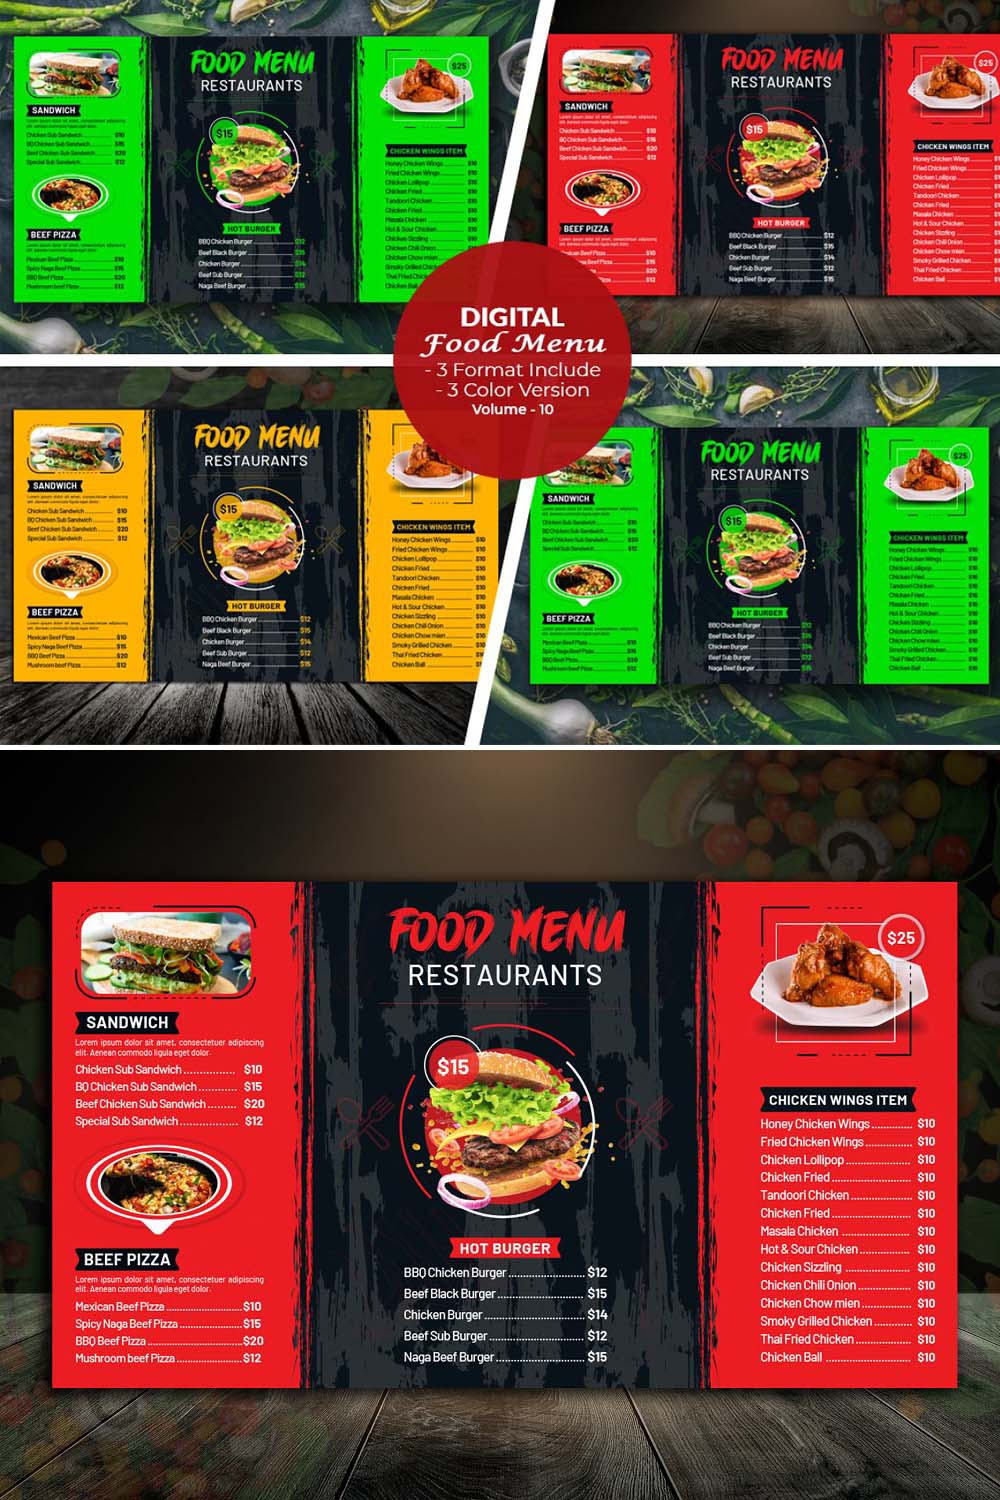 Digital Food Menu Template V-10 pinterest preview image.